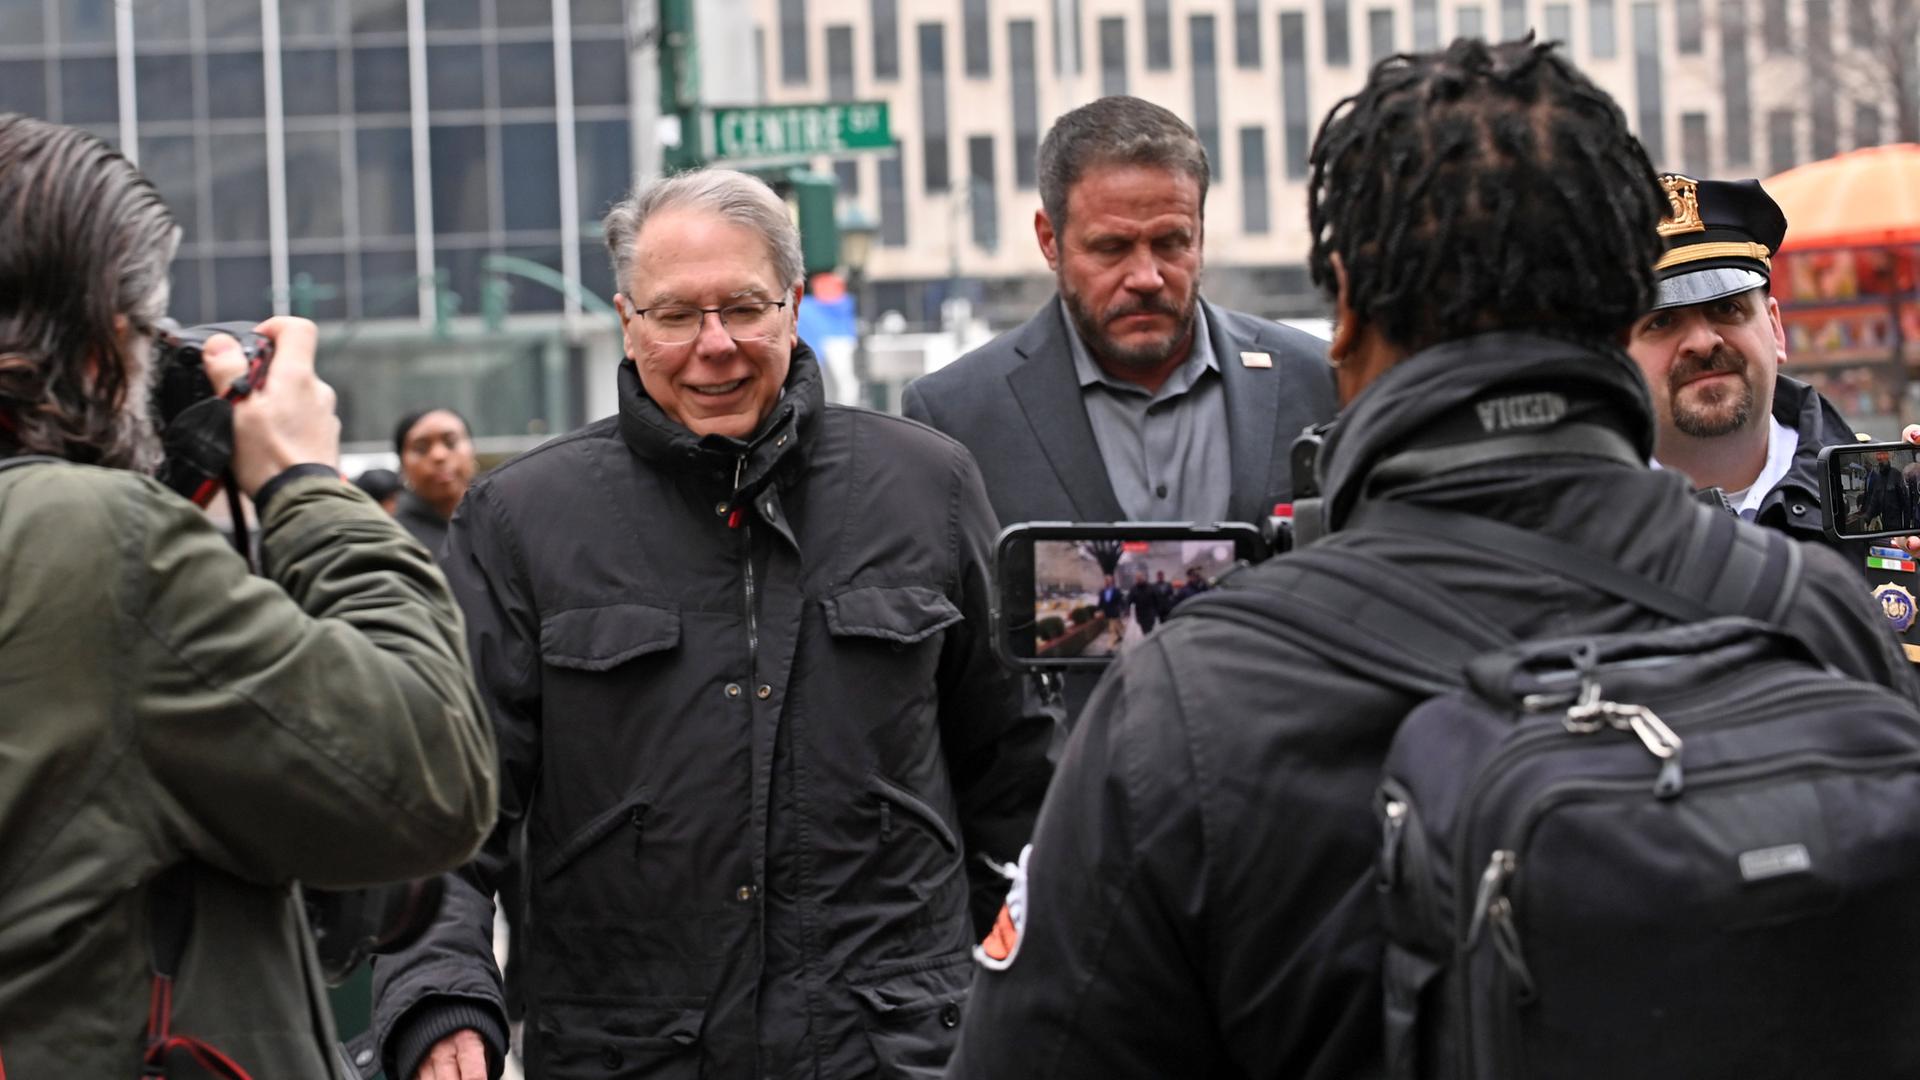 Der ehemalige NRA-Vorsitzende LaPierre geht umringt von Medienvertretern und Polizisten über eine Straße in Manhattan.